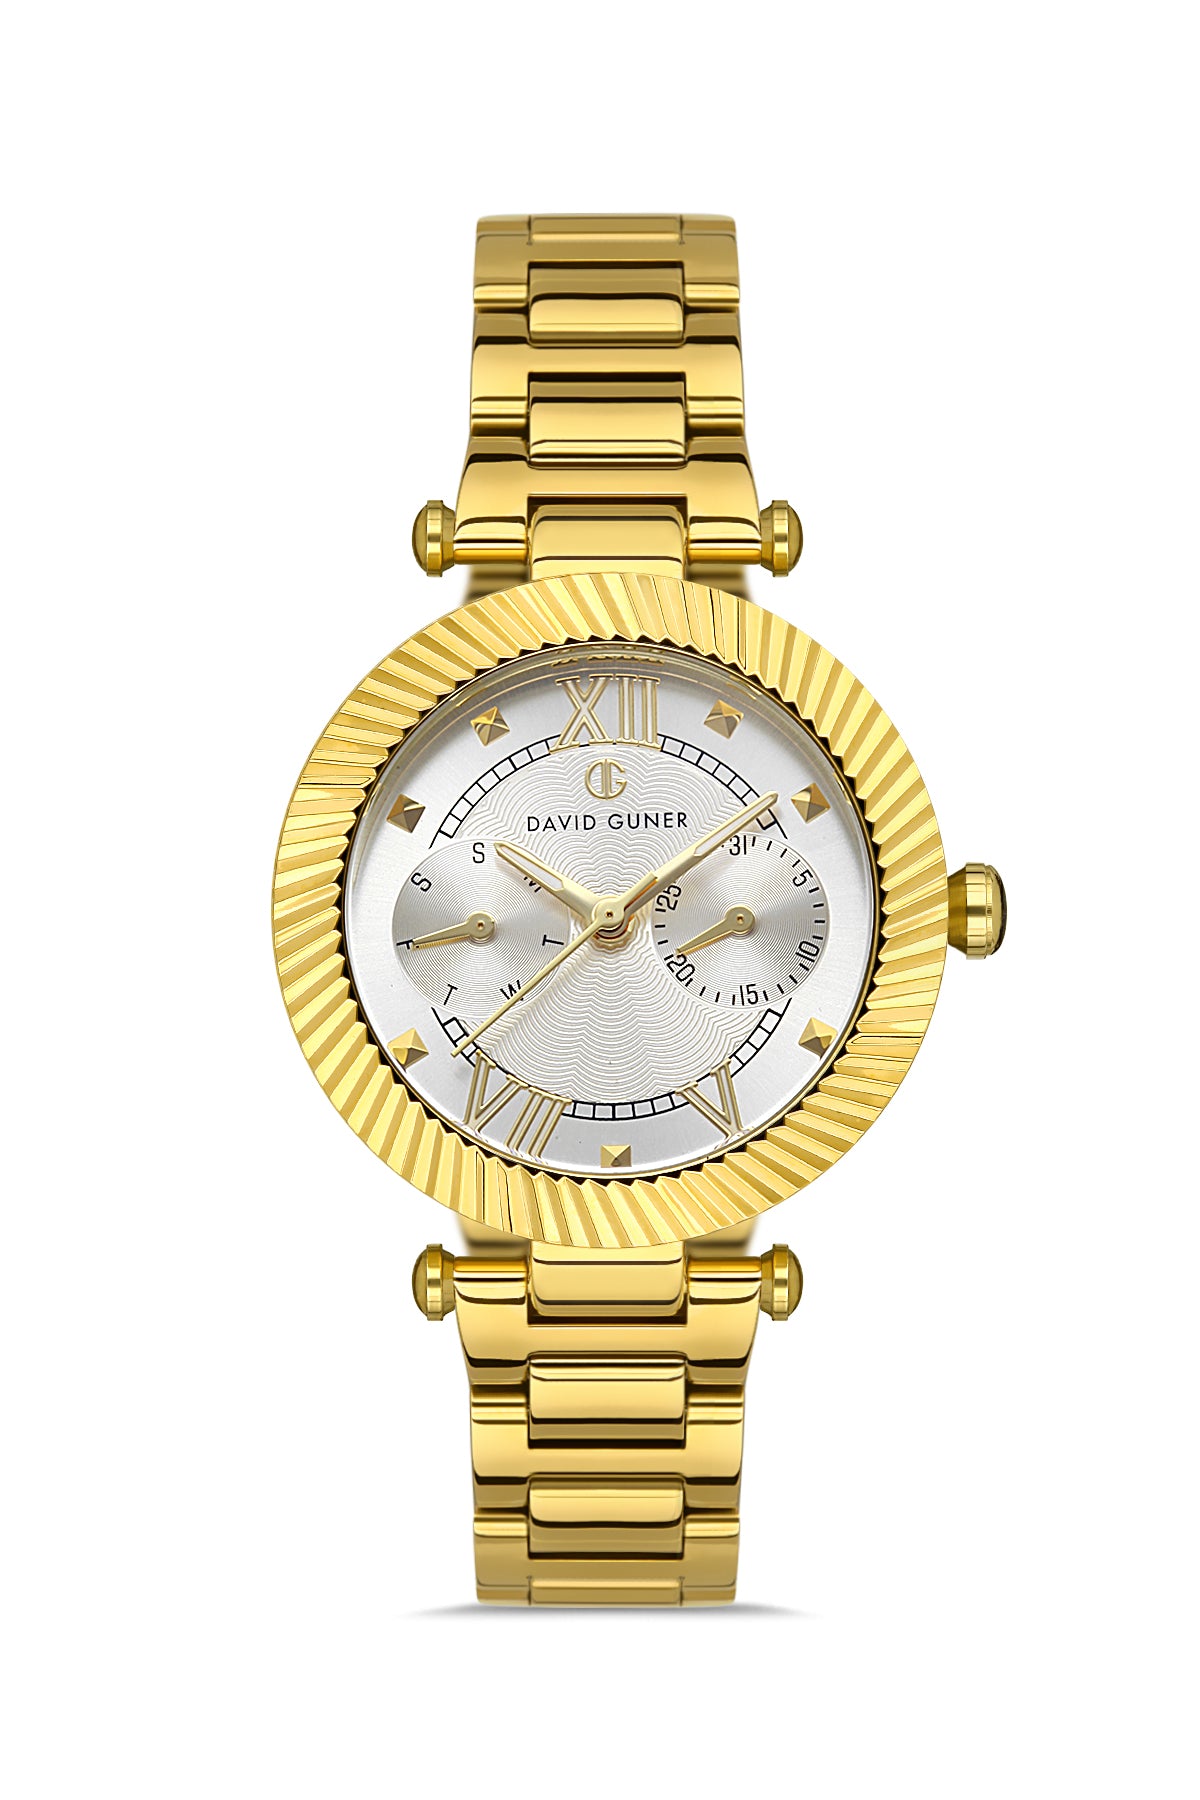 DAVID GUNER Silver Dial Yellow Coated Women's Wristwatch